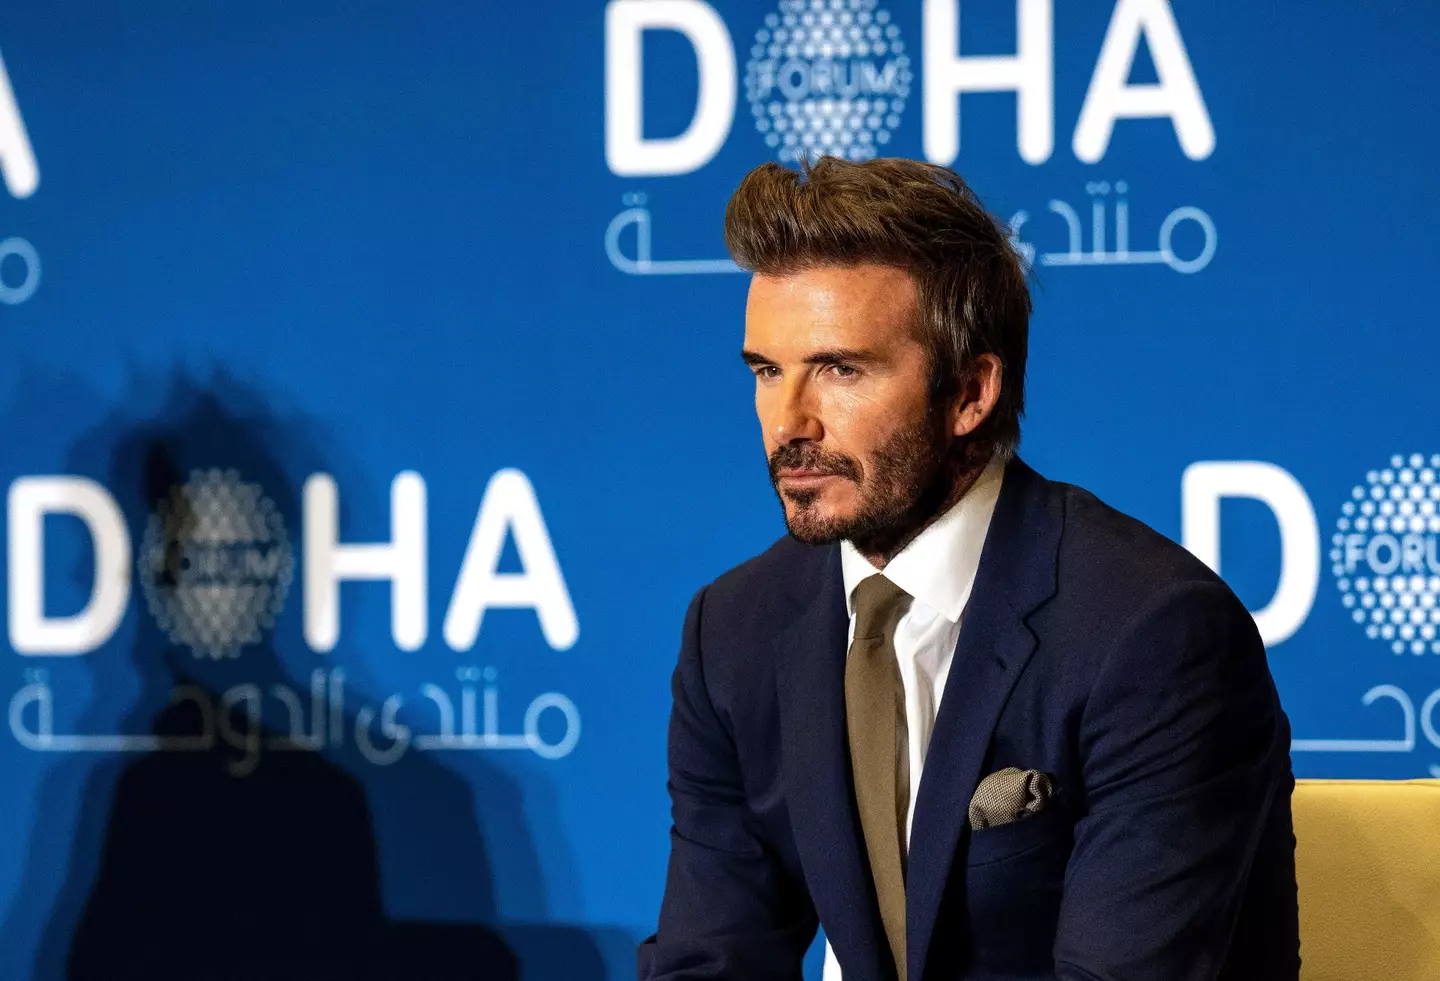 David Beckham is an ambassador for the 2022 World Cup.